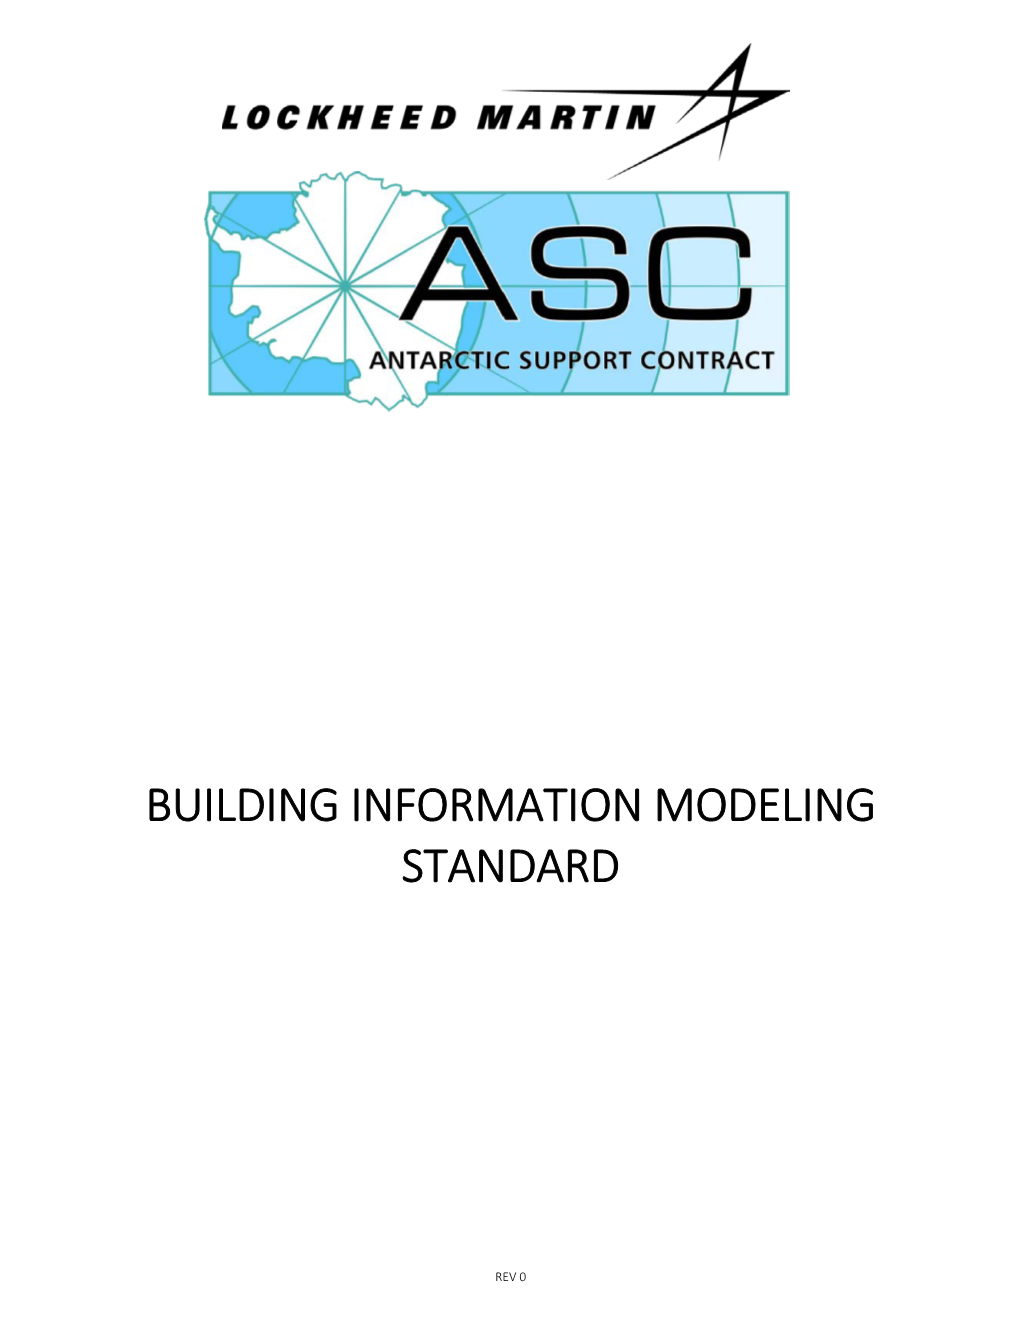 Building Information Modeling Standard